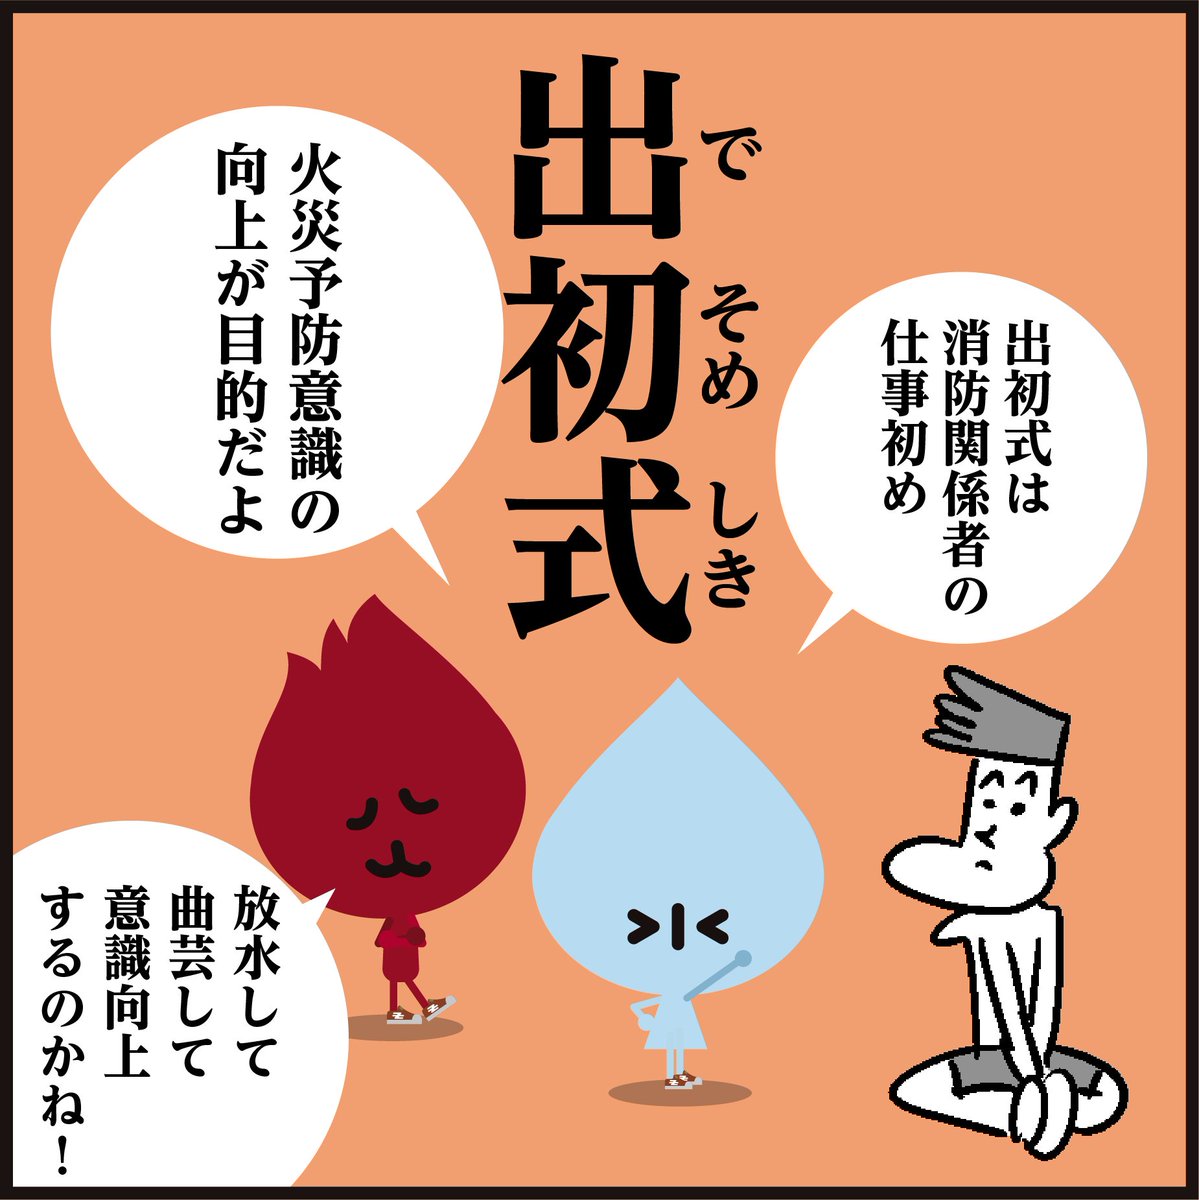 🌅新春を飾る恒例行事、漢字【出初式】←読めましたか～?

🚒東京消防出初式は1月6日に東京臨海広域防災公園(有明)・ビックサイトで開催されます。
#4コマ漫画 #イラスト #クイズ 